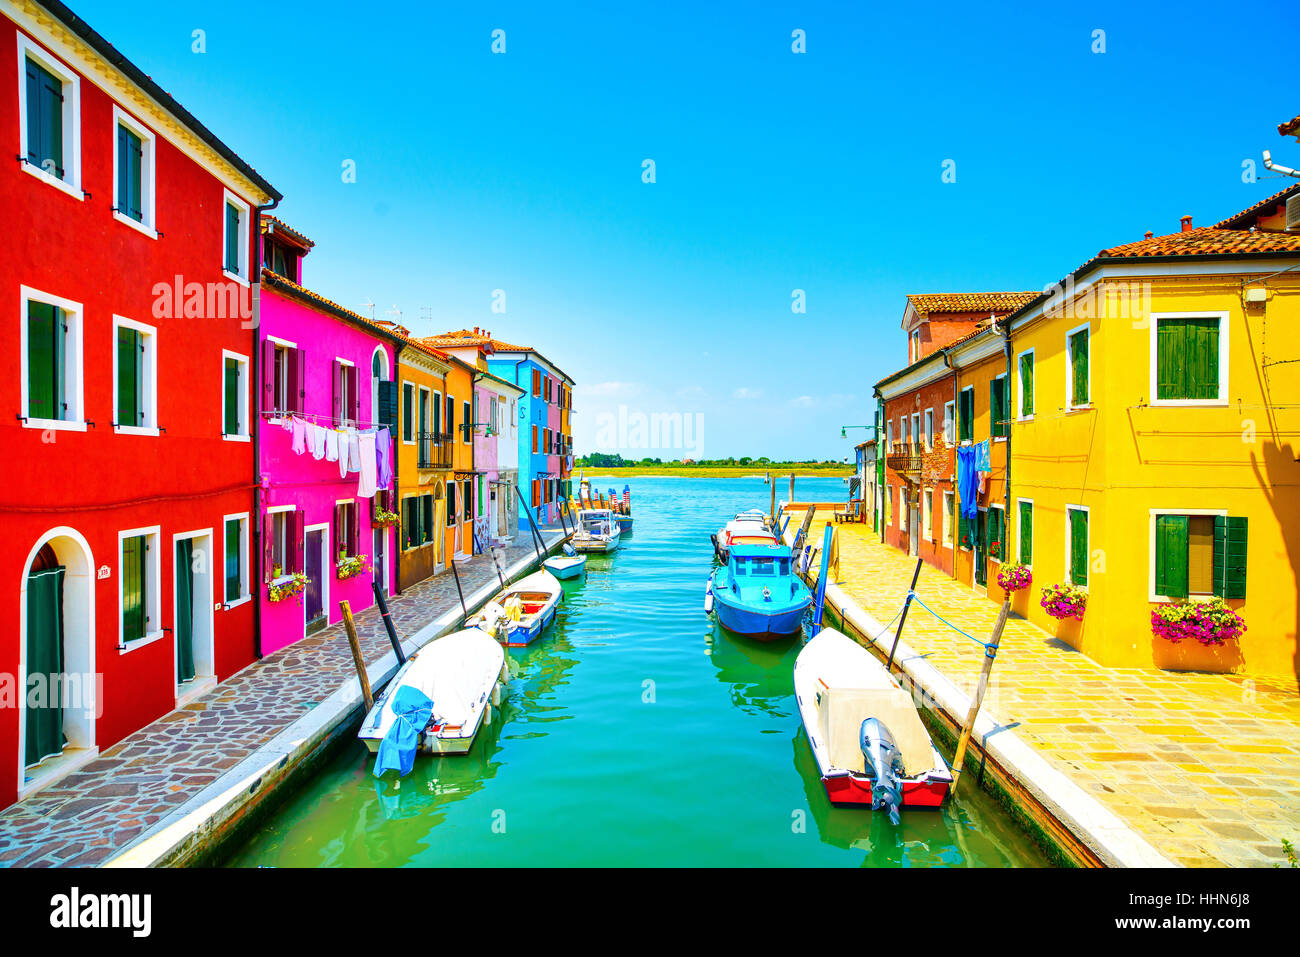 Wahrzeichen von Venedig, Burano Insel Kanal, bunte Häuser und Boote, Italien. Langzeitbelichtung Fotografie Stockfoto